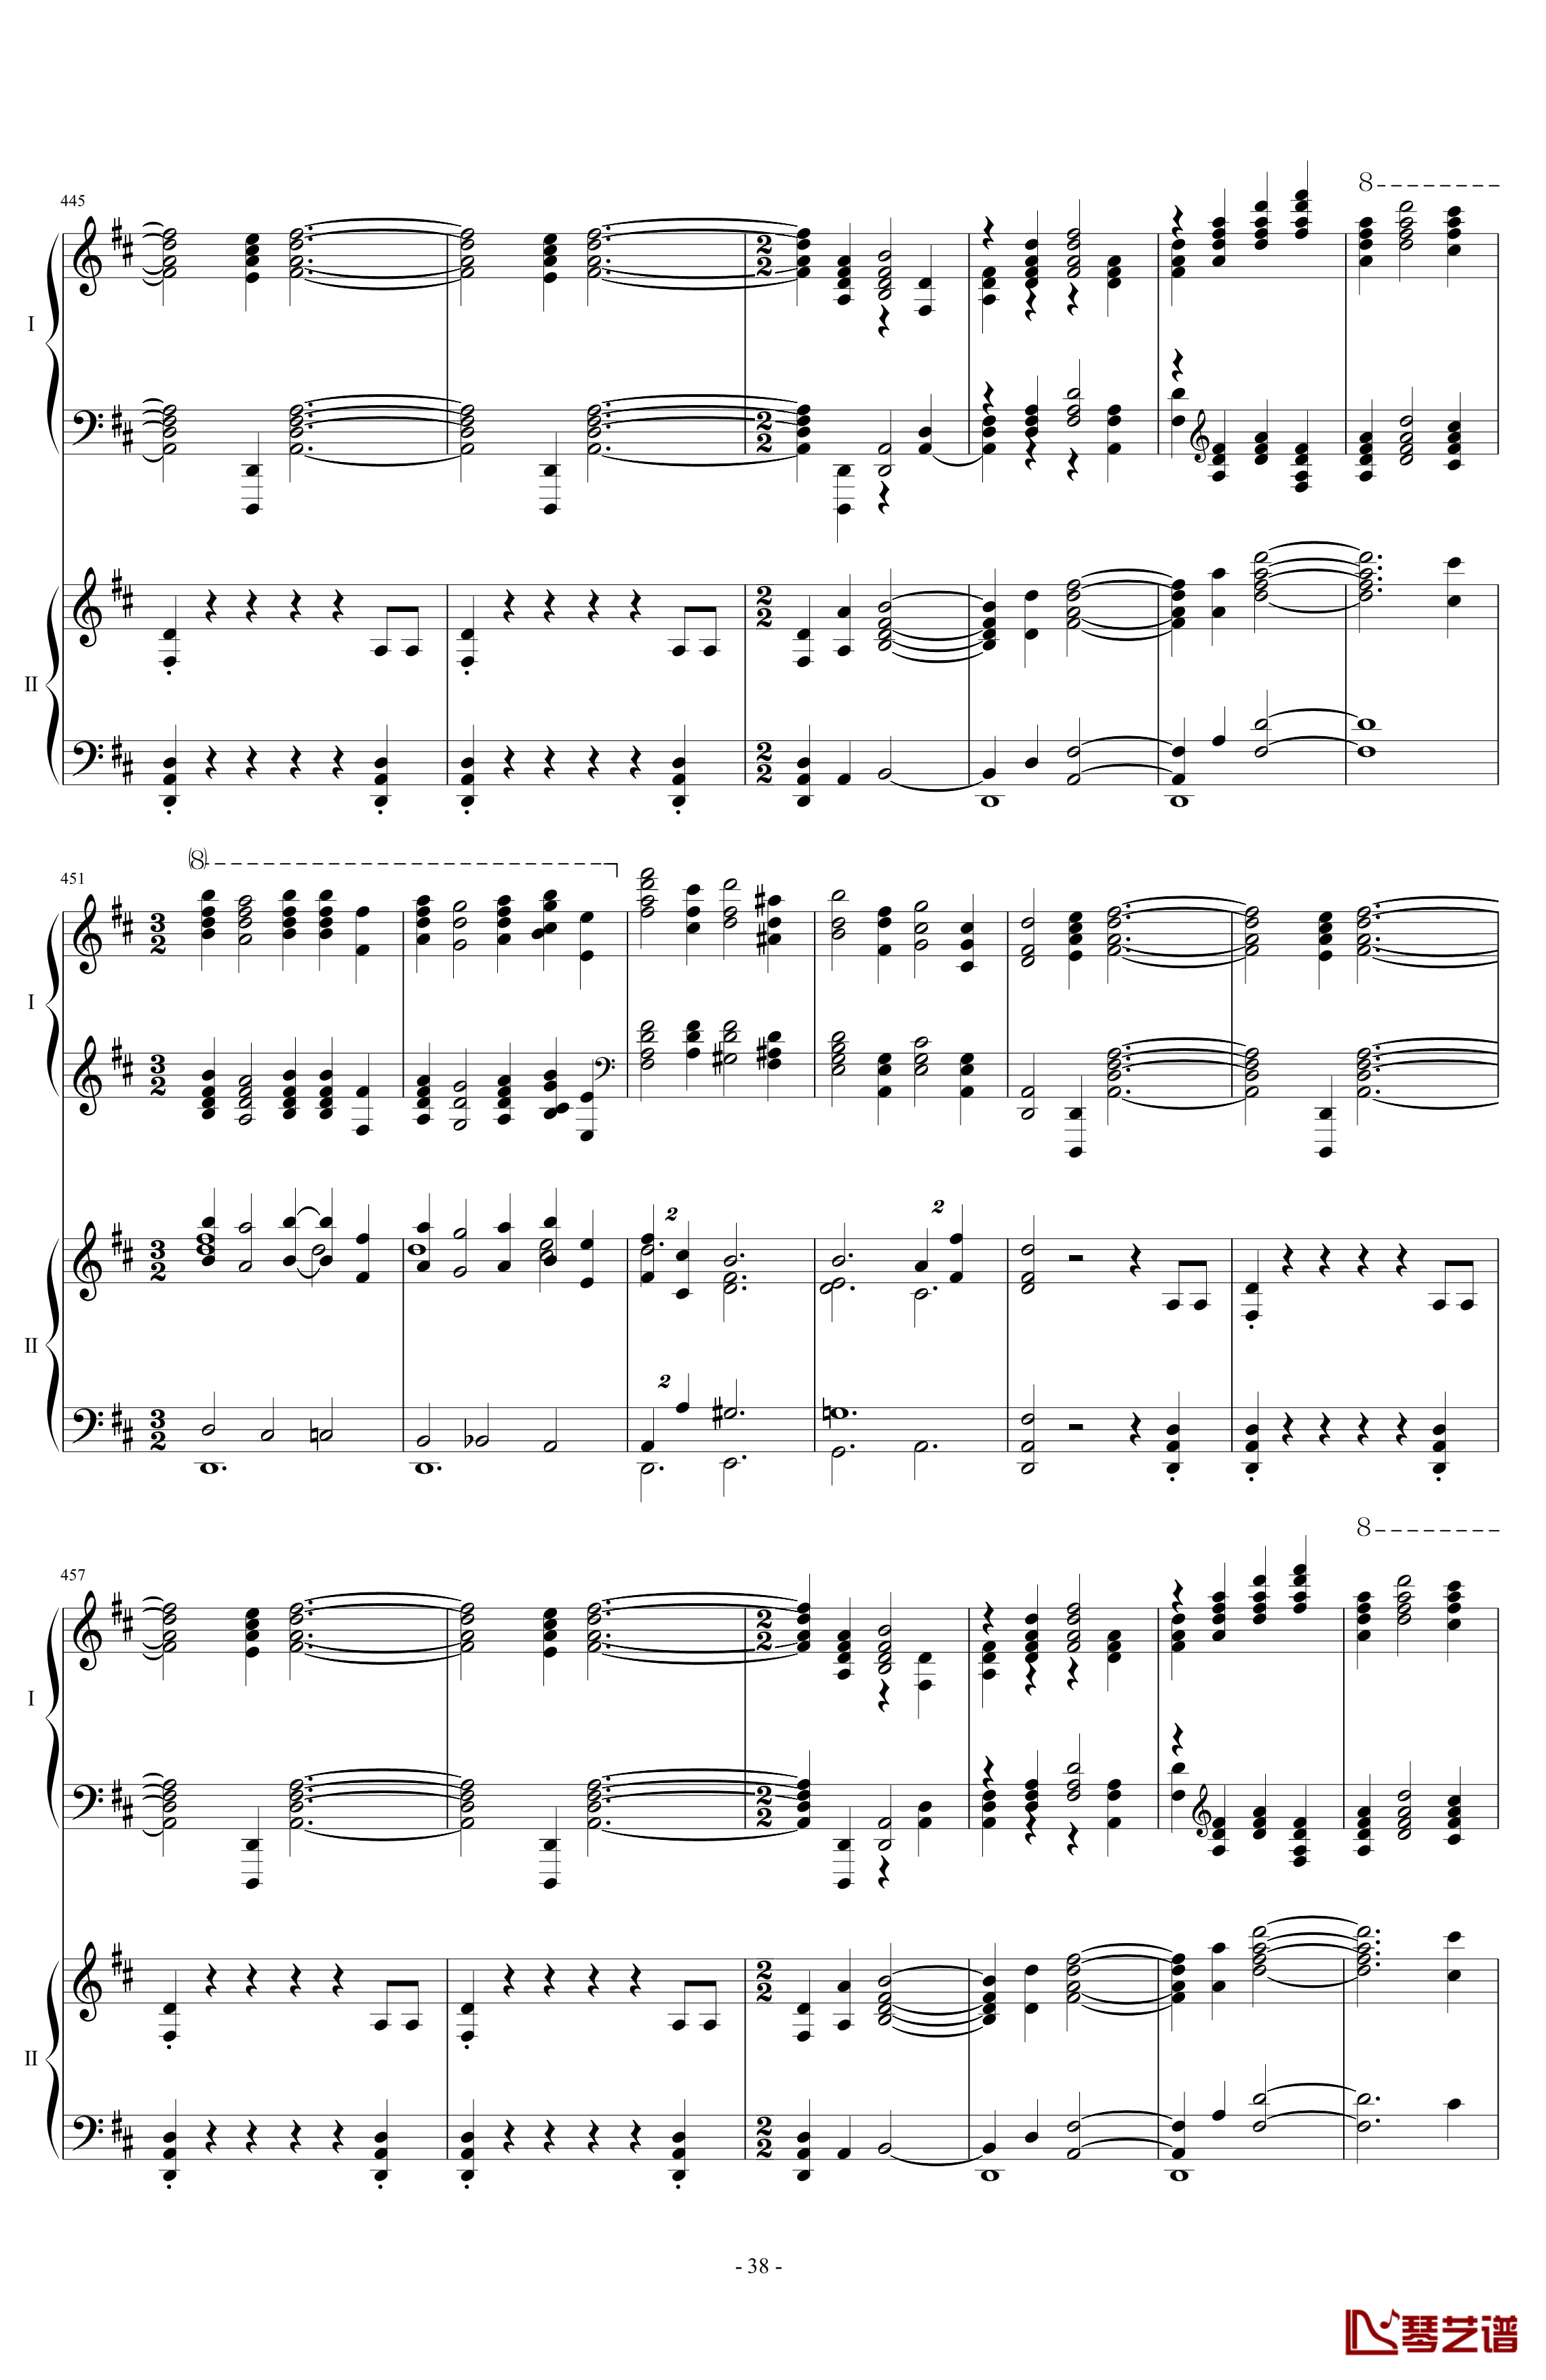 拉三第三乐章41页双钢琴钢琴谱-最难钢琴曲-拉赫马尼若夫38